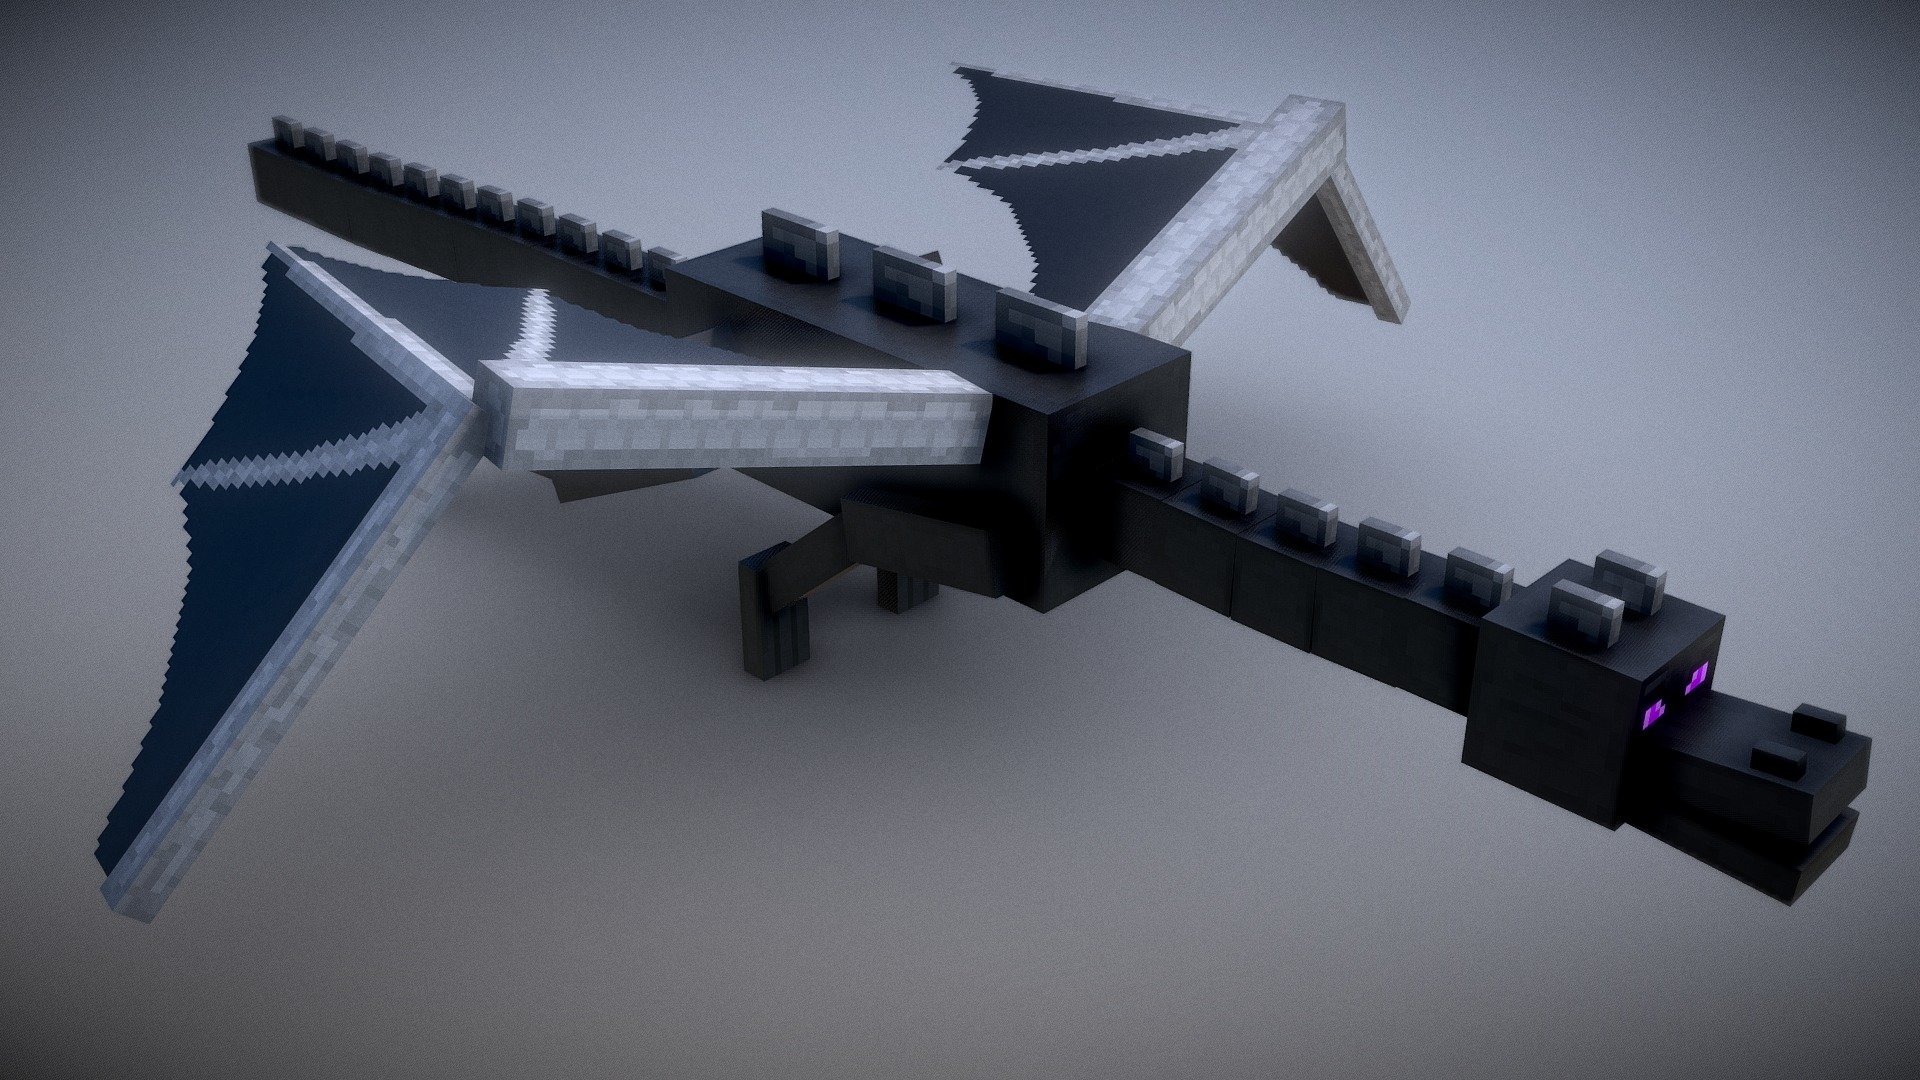 Minecraft Ender Dragon Download Free 3d Model By Vincent Yanez Vinceyanez 5eaf52e